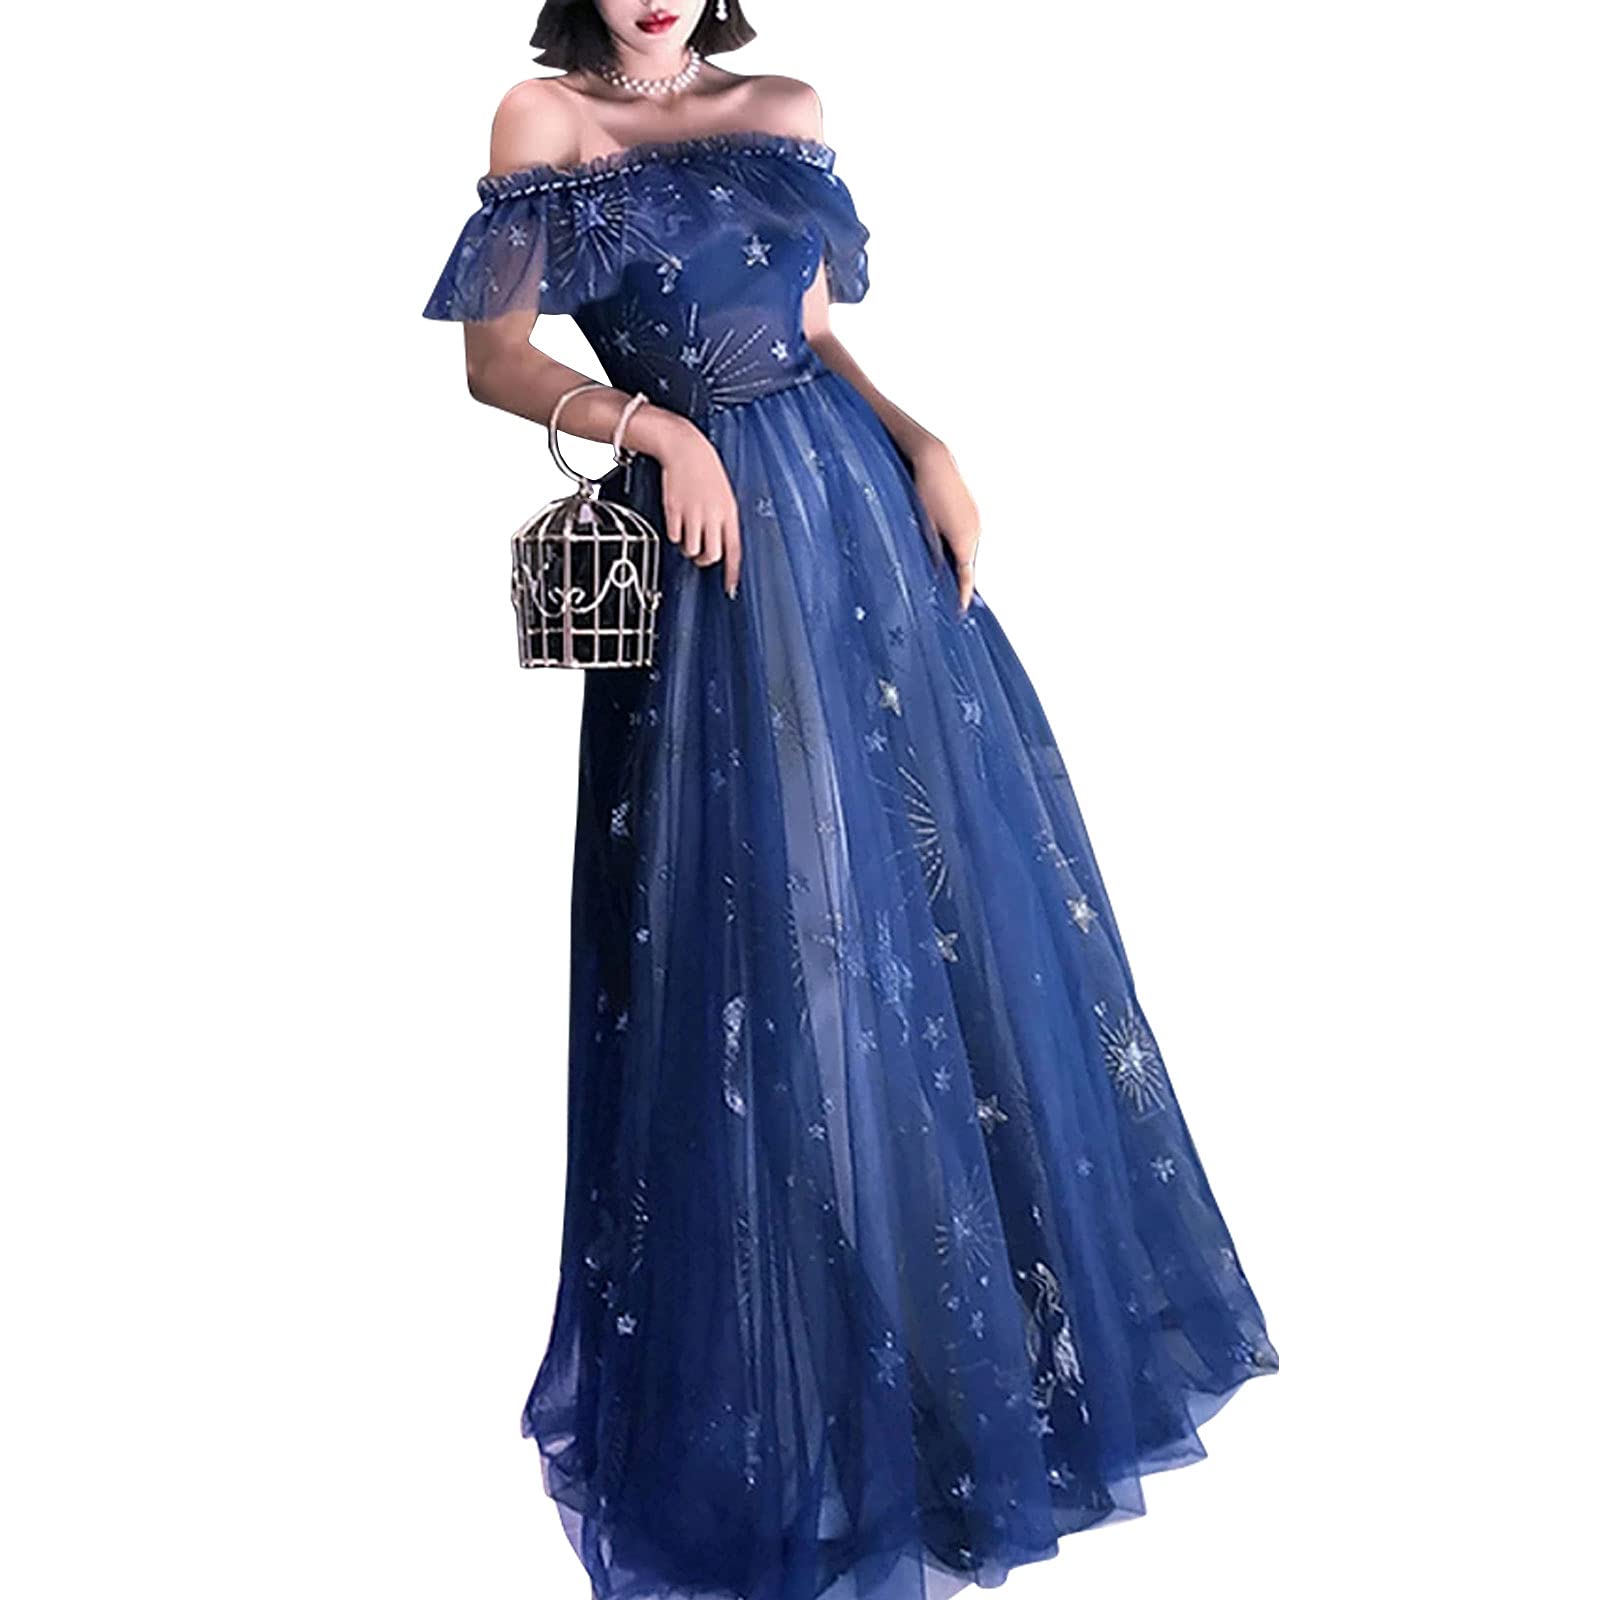 Monkidoll A-Line Elegant Prom Formal Evening Dress Off Shoulder Short Sleeve Floor Length